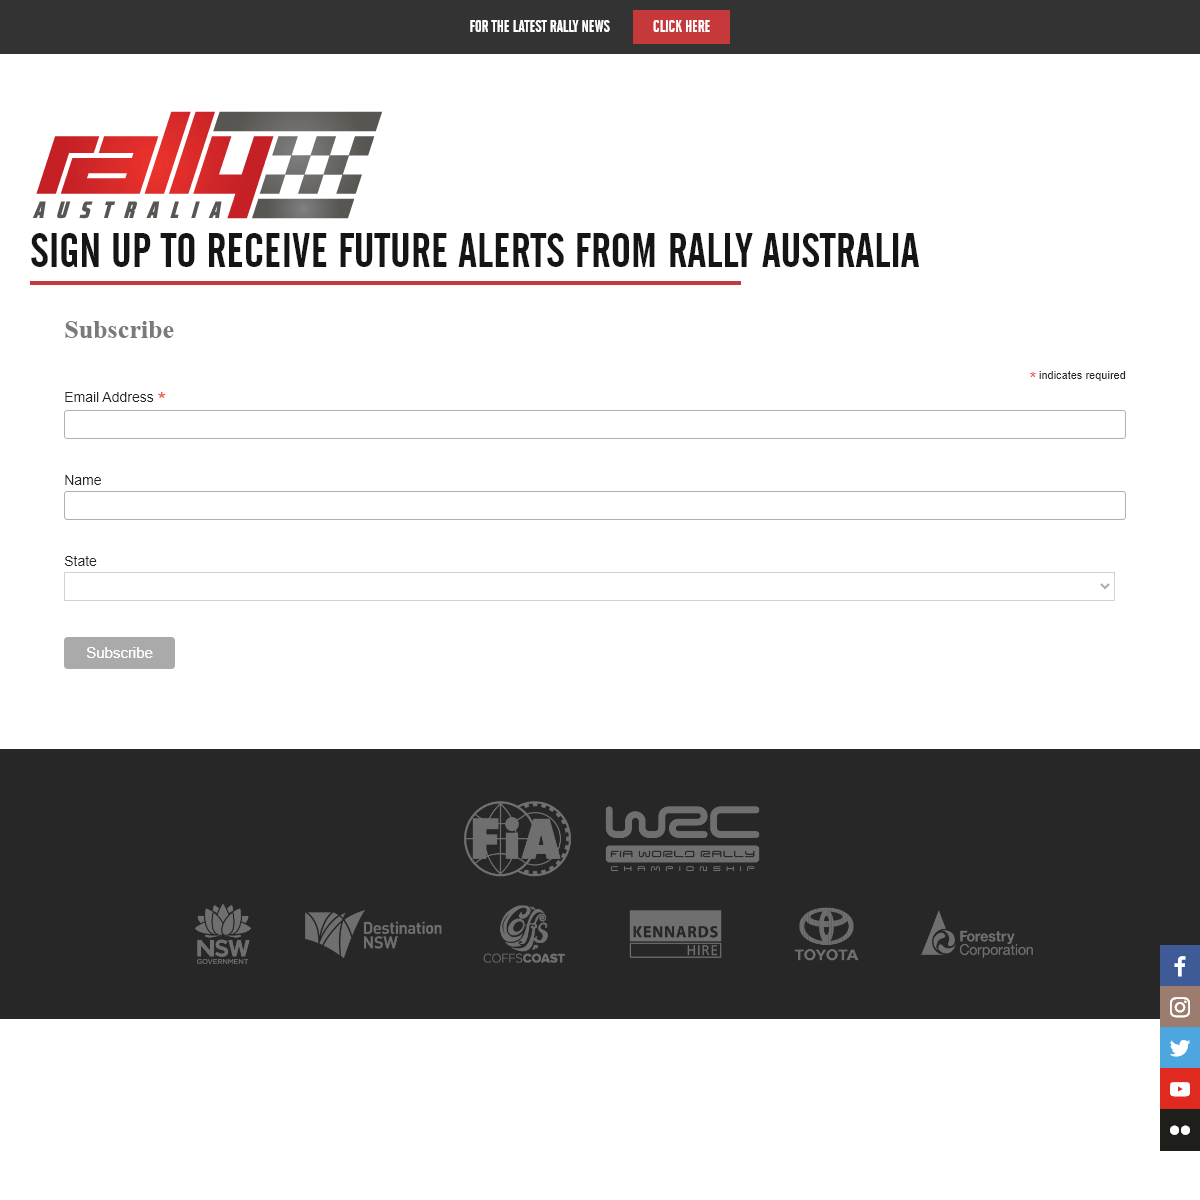 A complete backup of rallyaustralia.com.au